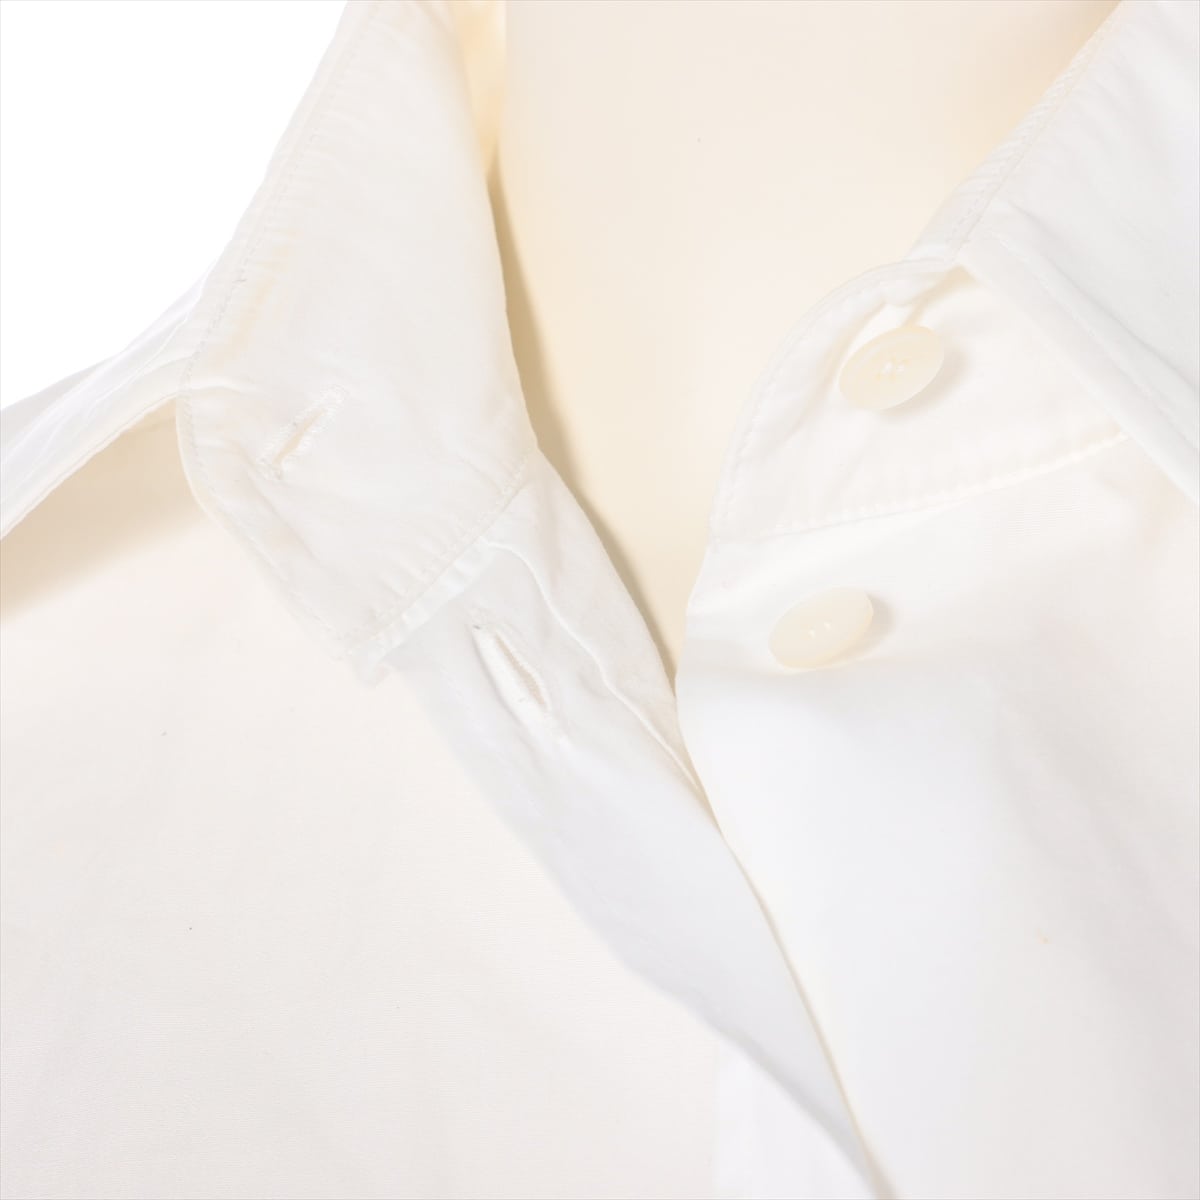 Hermès Cotton Shirt dress 36 Ladies' White